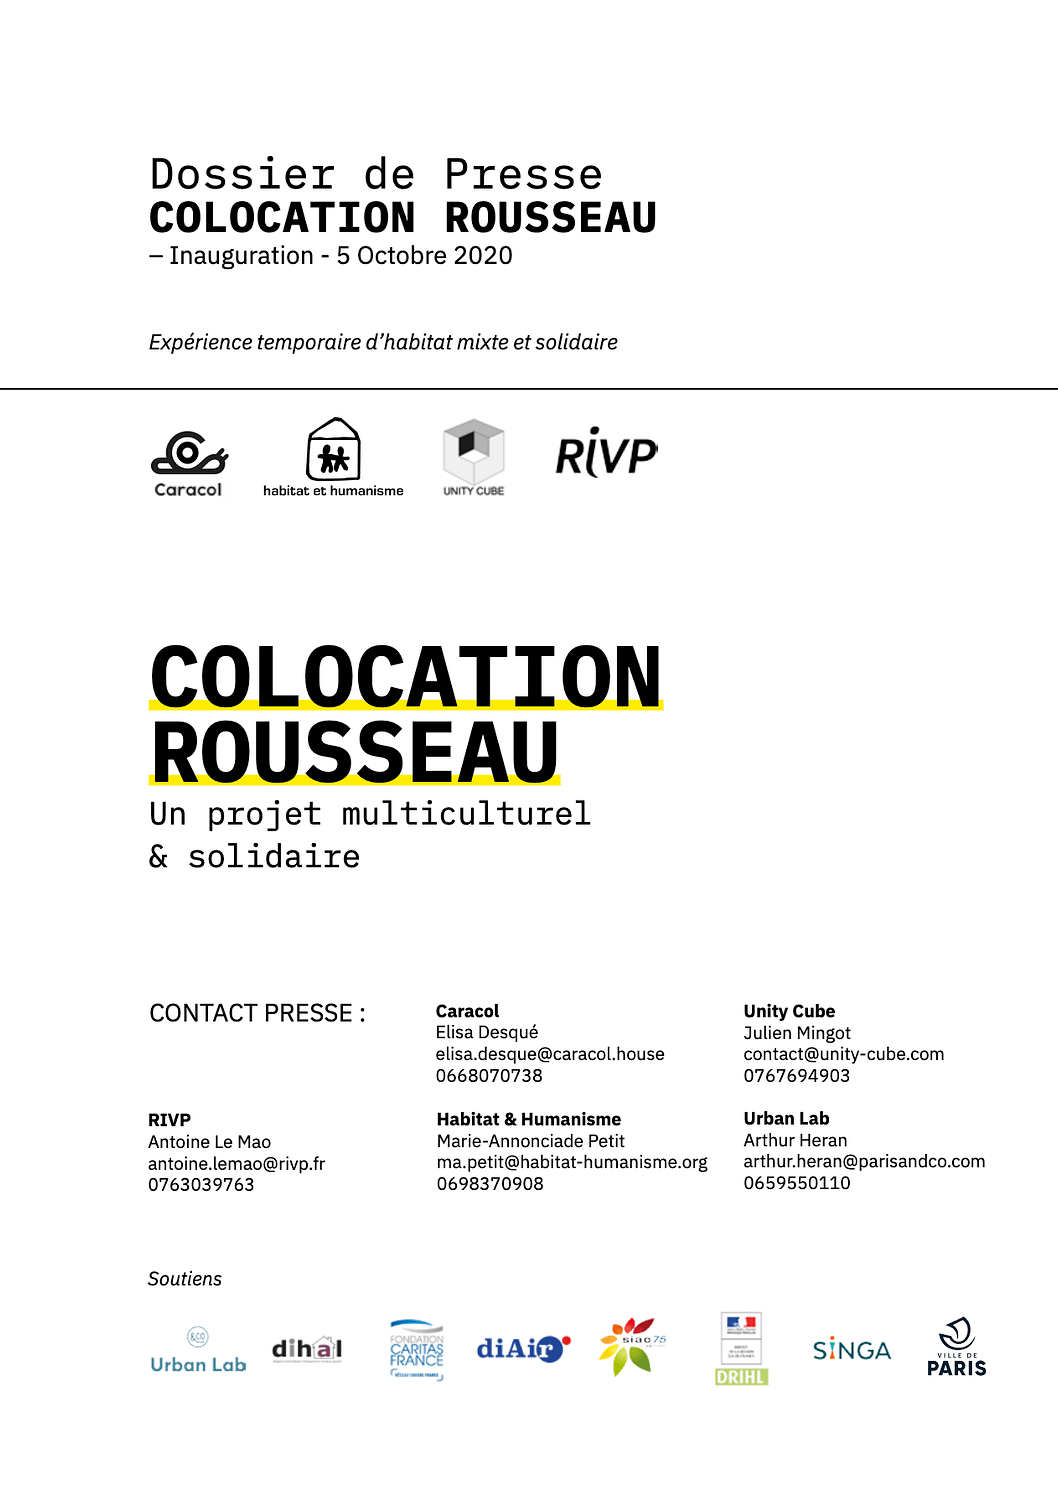 Caracol_Dossier de Presse 2020 - Rousseau